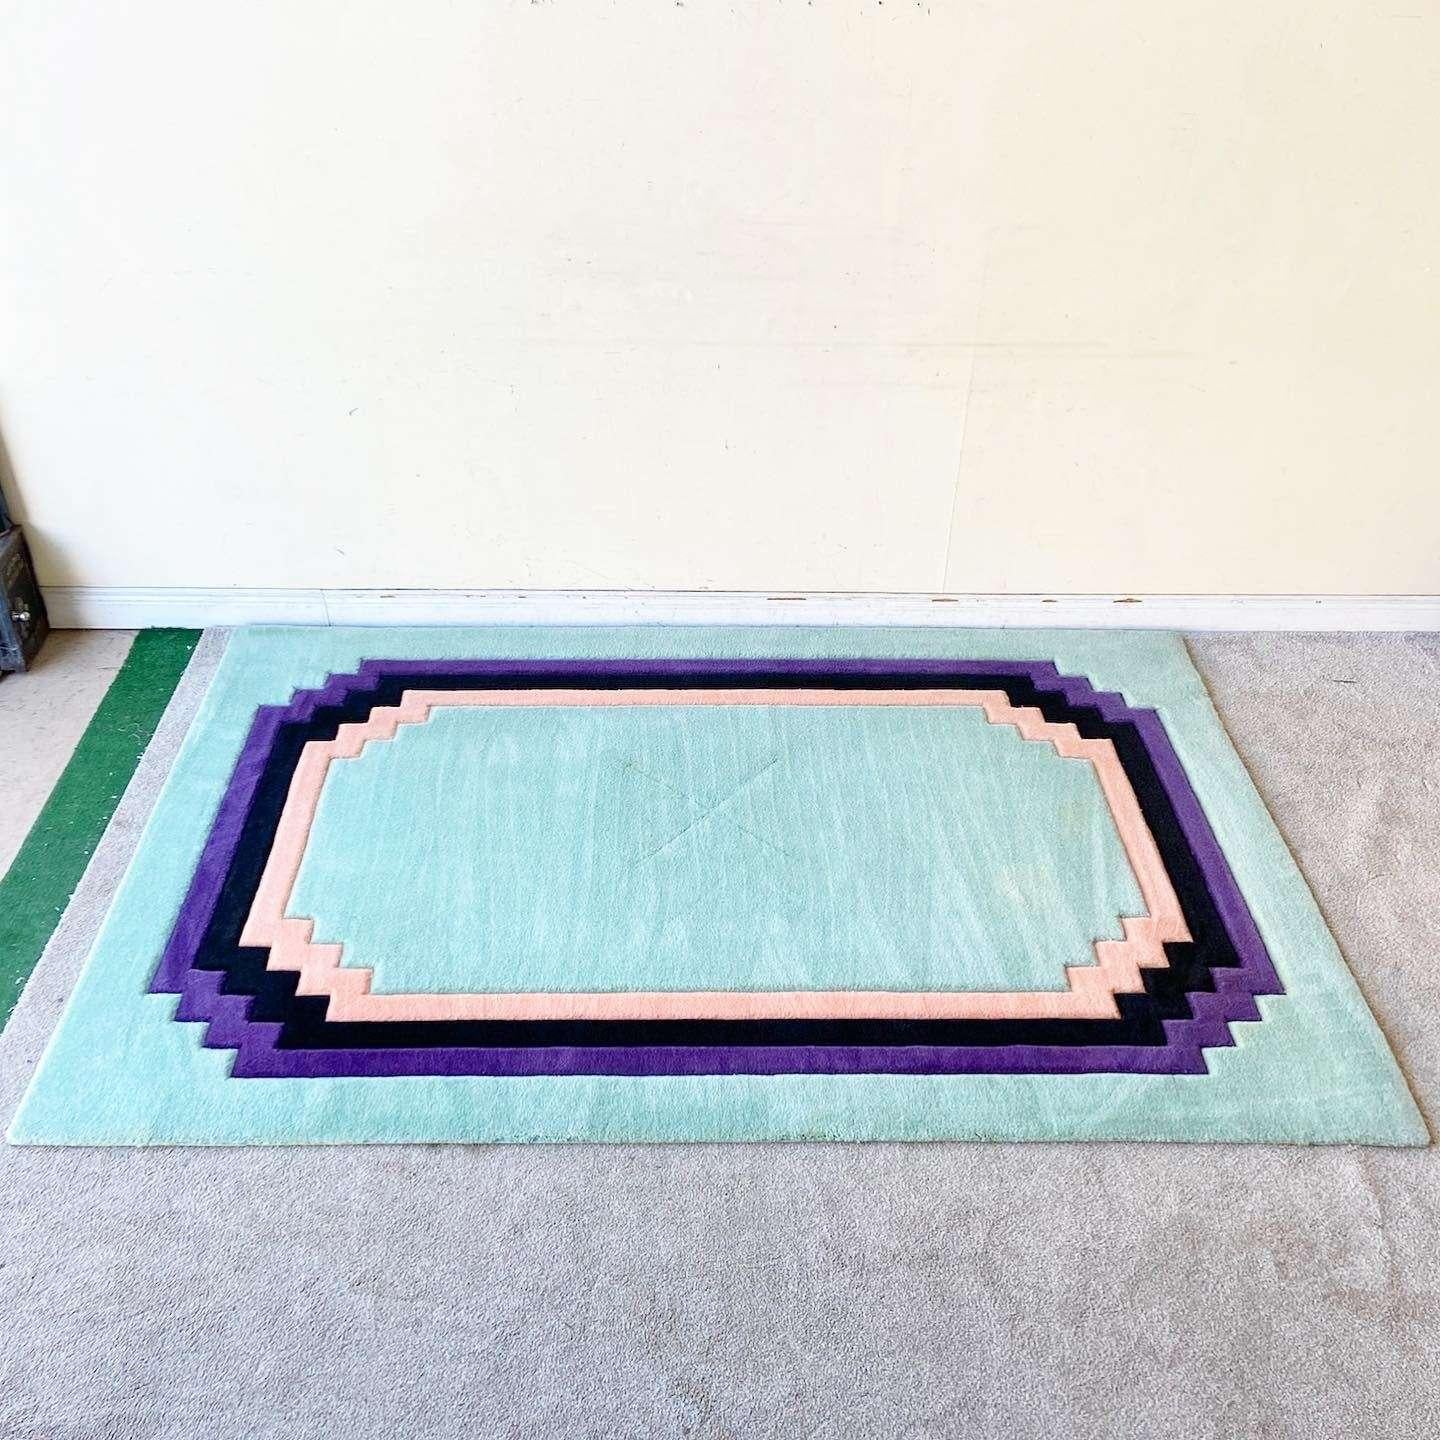 Erstaunlich Vintage Art Deco / Postmoderne rechteckigen Bereich Teppich. Das Innere und der äußere Rand sind mintgrün, umrandet von lila, schwarzen und rosa Streifen.

Vorleger 43
